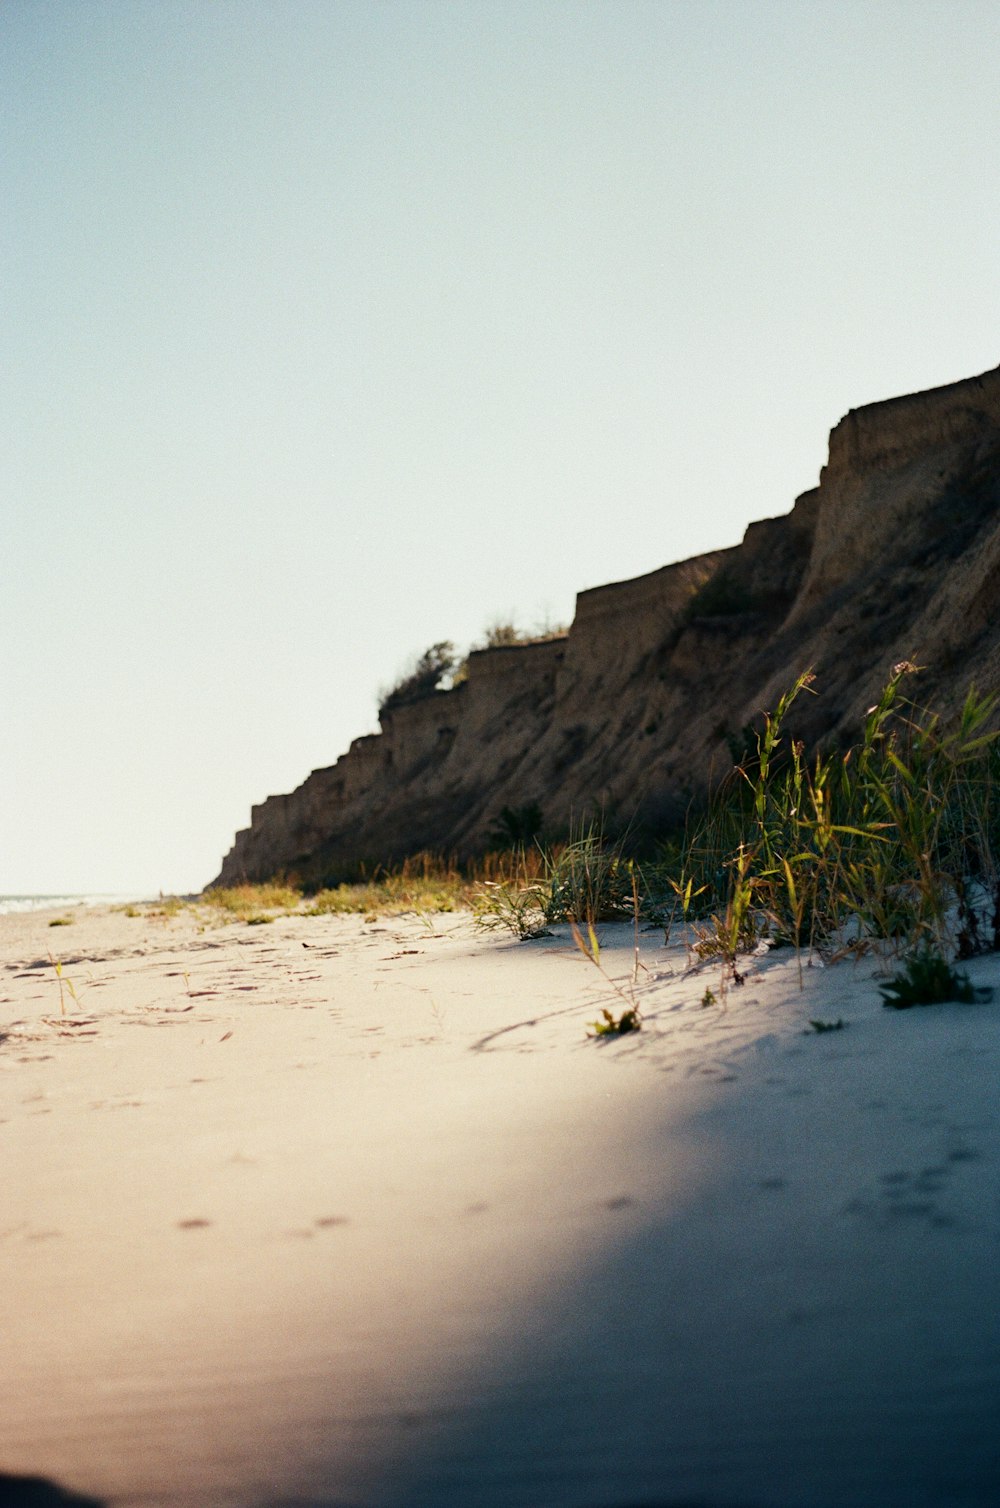 모래 사장 위에서 서핑 보드를 타는 사람